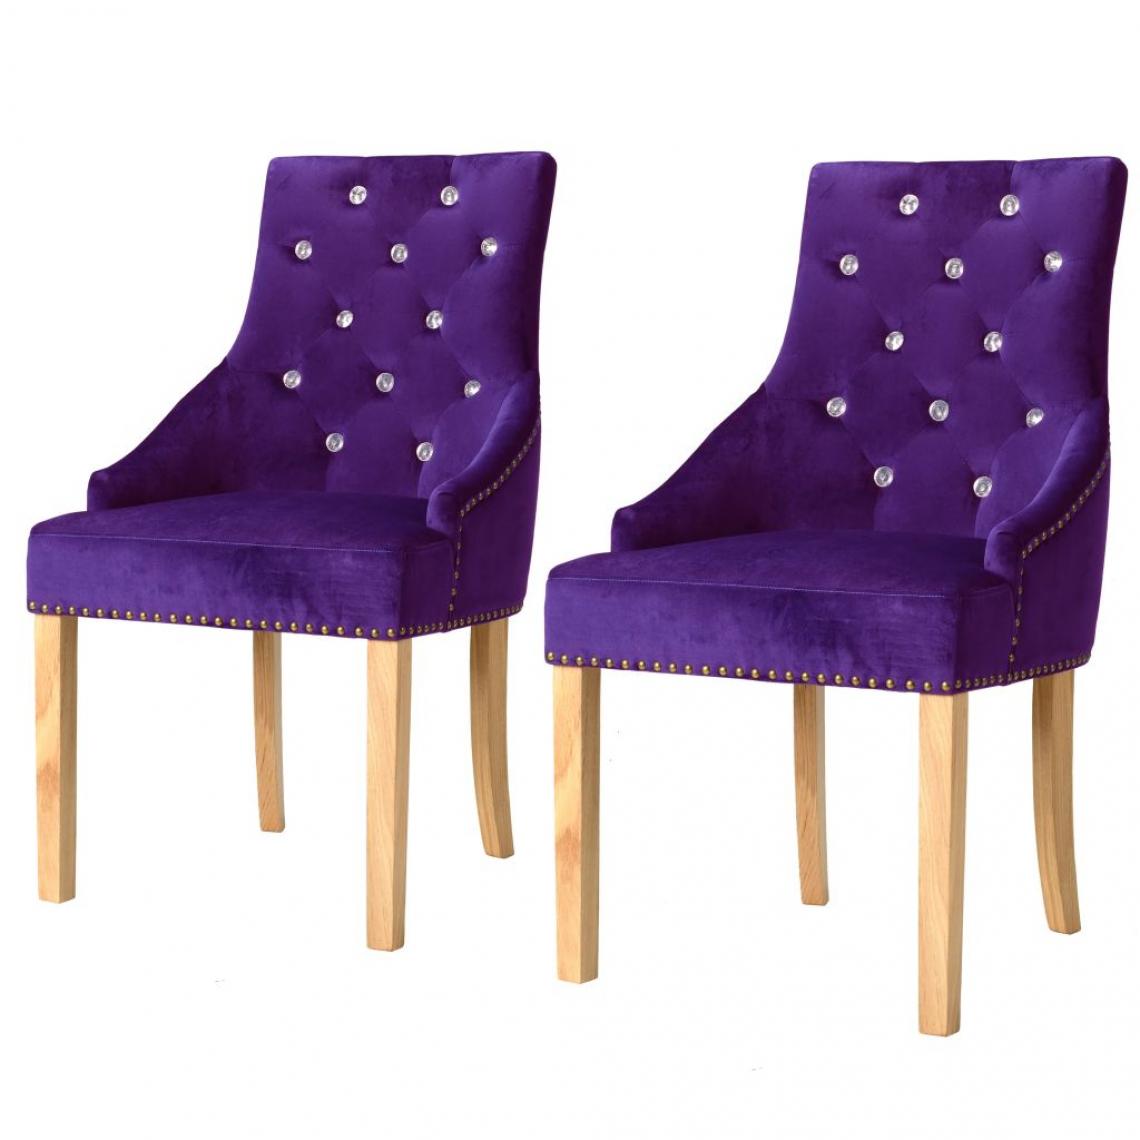 Decoshop26 - Lot de 2 chaises de salle à manger cuisine design intemporel chêne massif et velours violet CDS021139 - Chaises